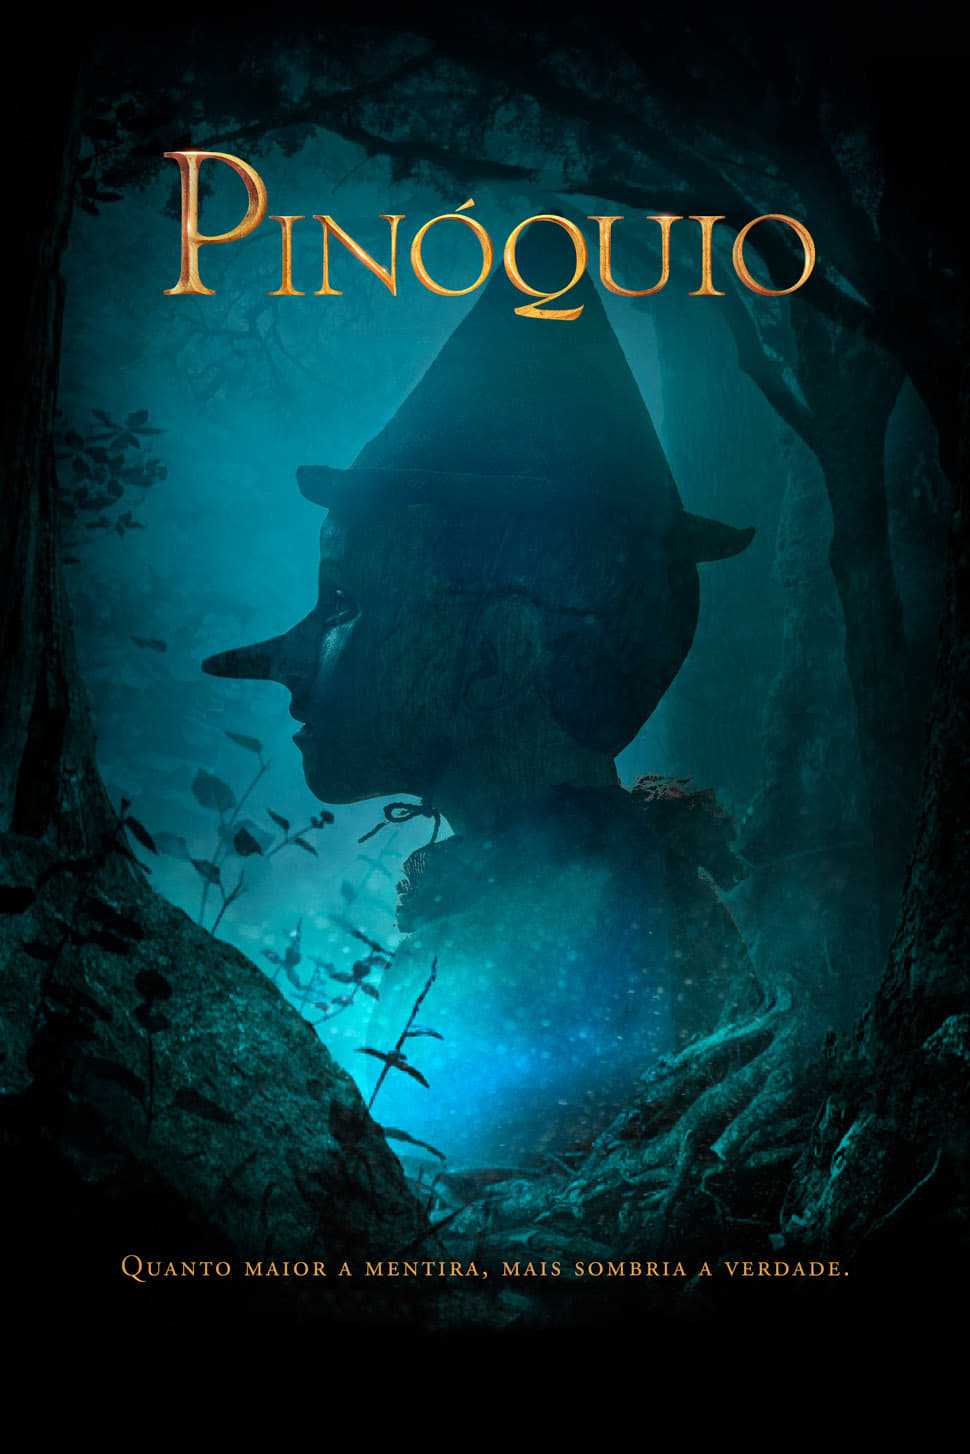 Image Pinóquio (Pinocchio)